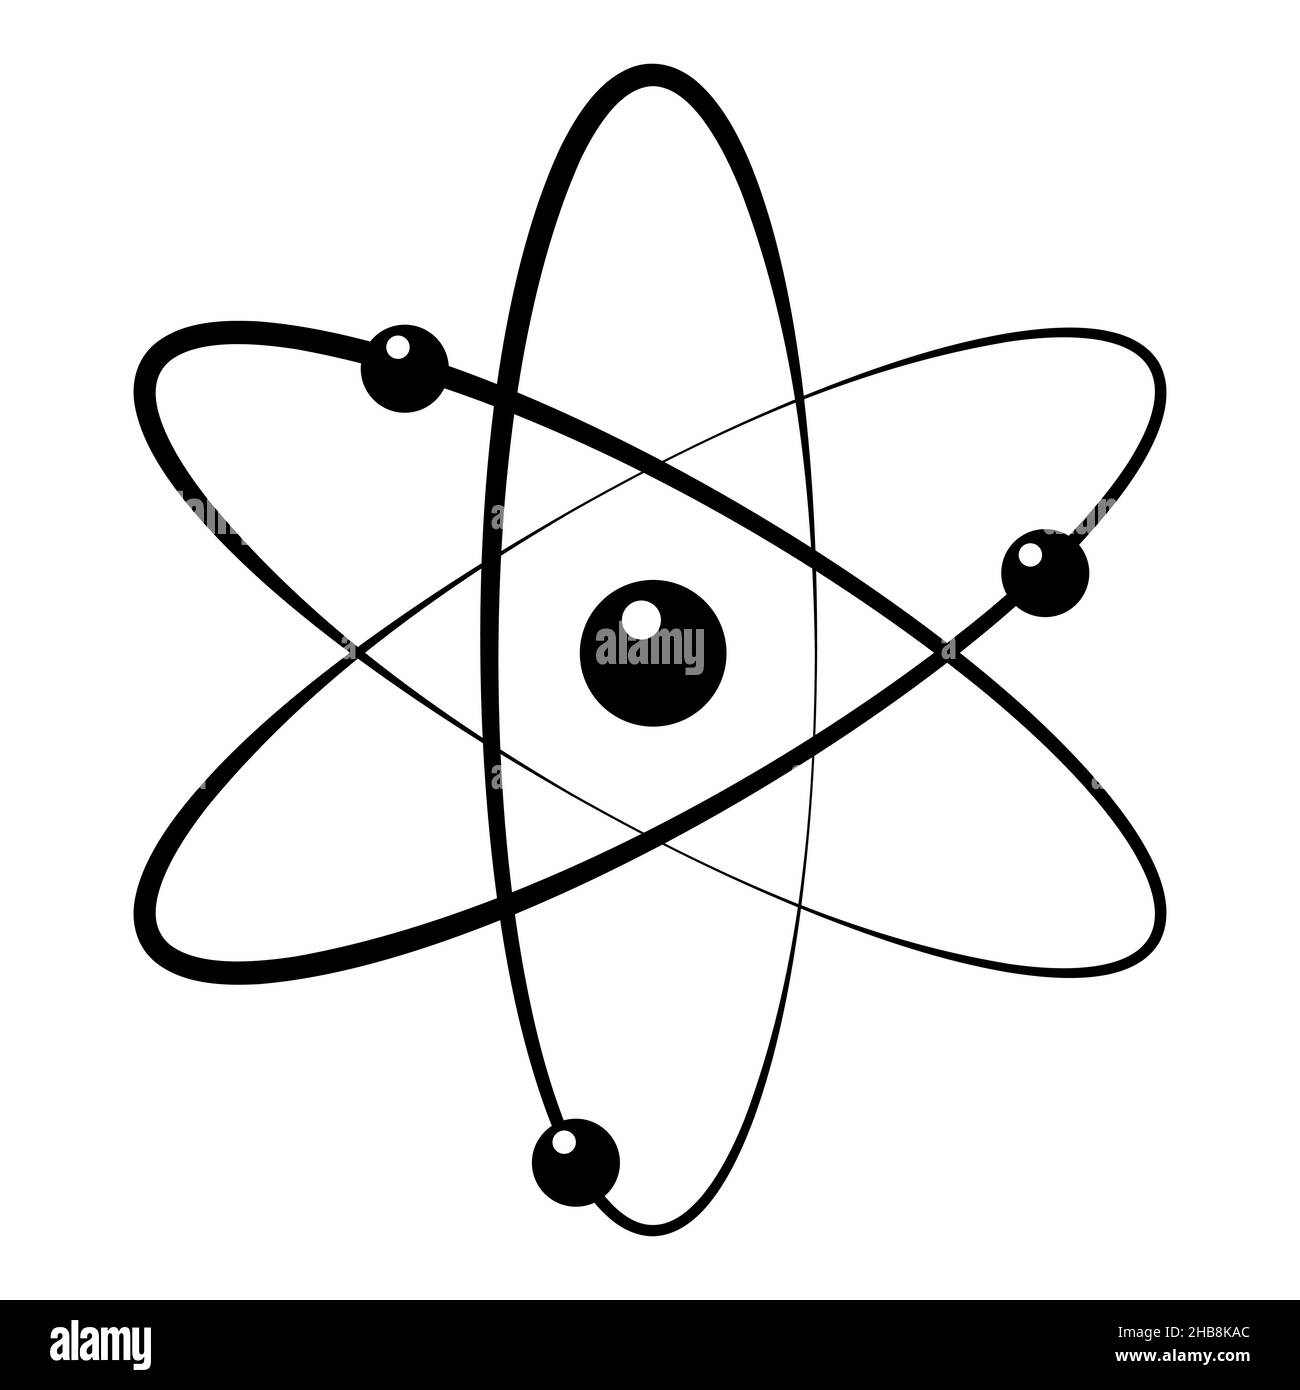 Icône Atom dans un style plat tendance.Symbole Atom pour la conception de votre site Web, logo, application, interface utilisateur.Illustration vectorielle, EPS10 Illustration de Vecteur